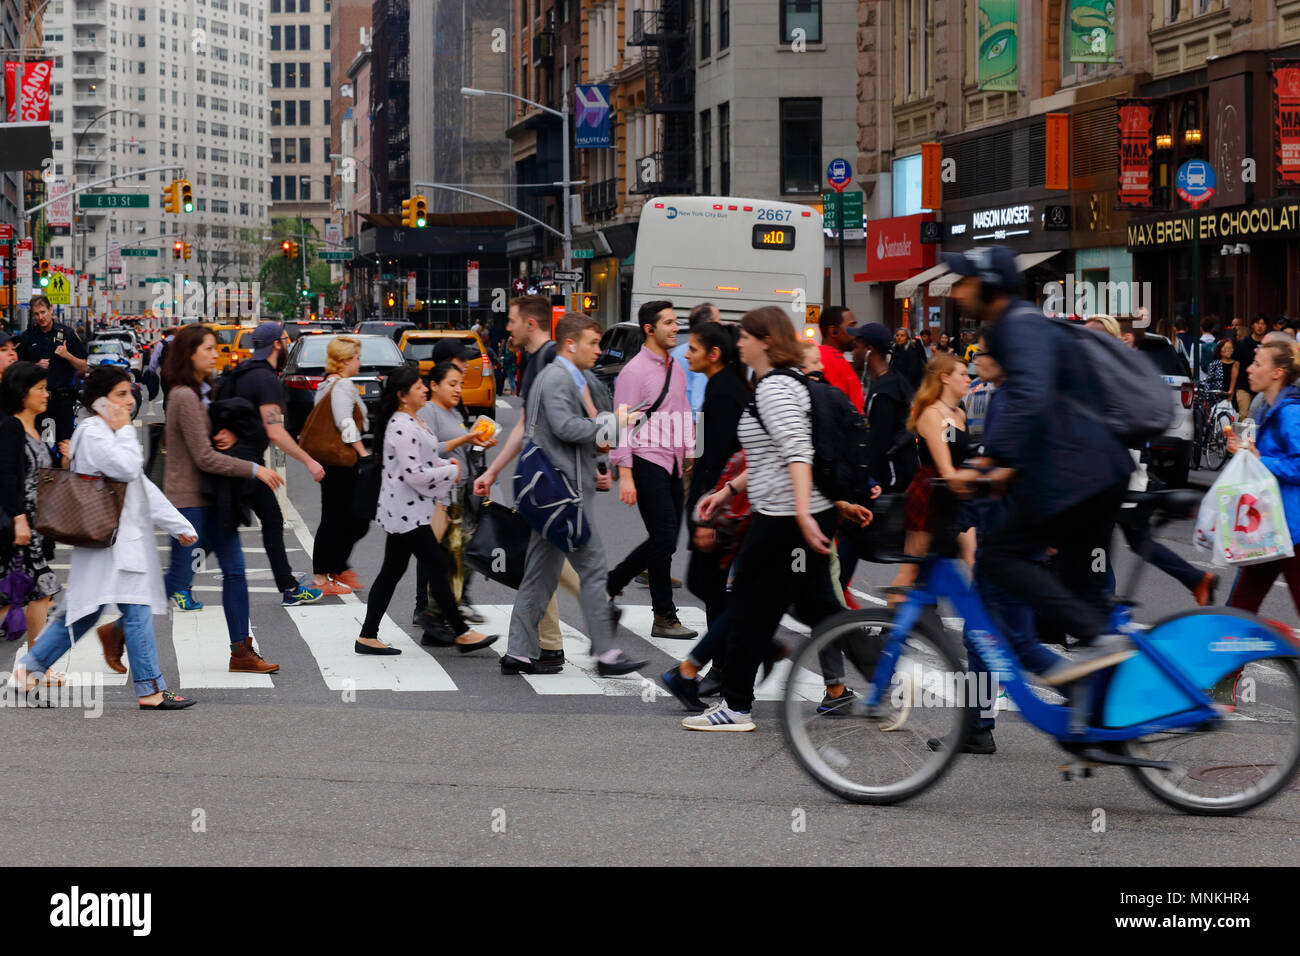 Les personnes qui traversent une rue de Union Square à Manhattan, New York, NY (17 mai 2018) Banque D'Images